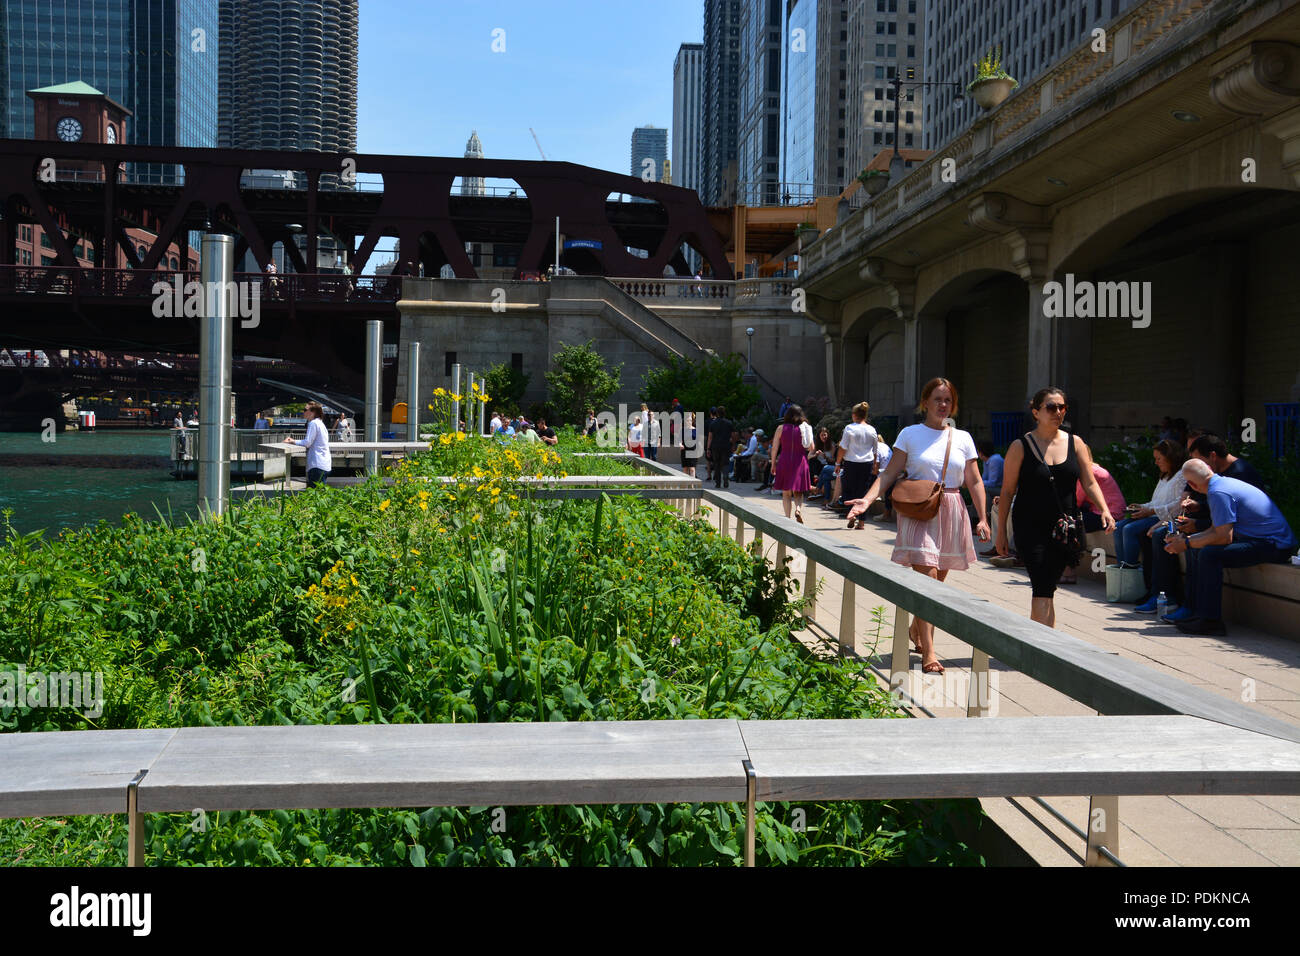 Piers permettent aux gens de sortir parmi les semis dans une section éducative de la Riverwalk Chicago connu sous le nom de jardins flottants ou jetée. Banque D'Images